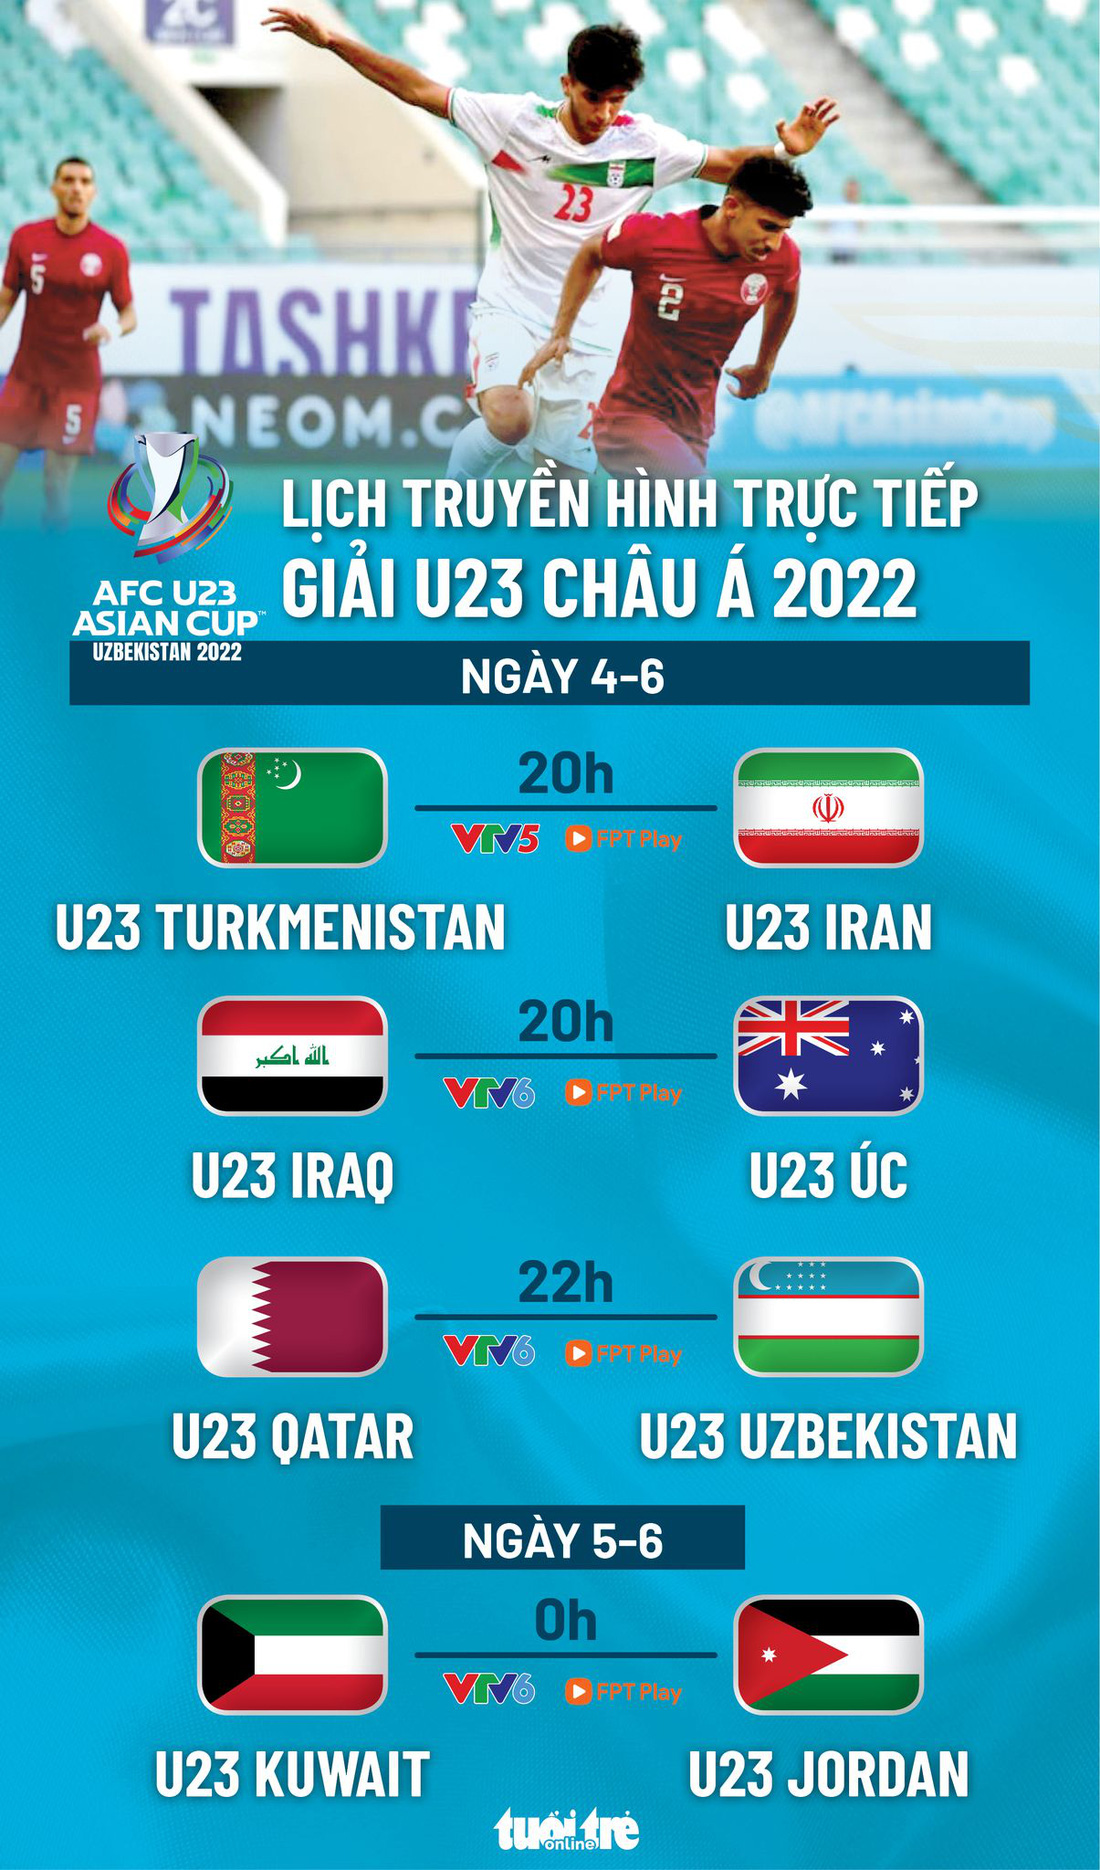 Lịch trực tiếp Giải U23 châu Á 2022 ngày 4-6: Úc, Iran, Iraq, Qatar thi đấu - Ảnh 1.